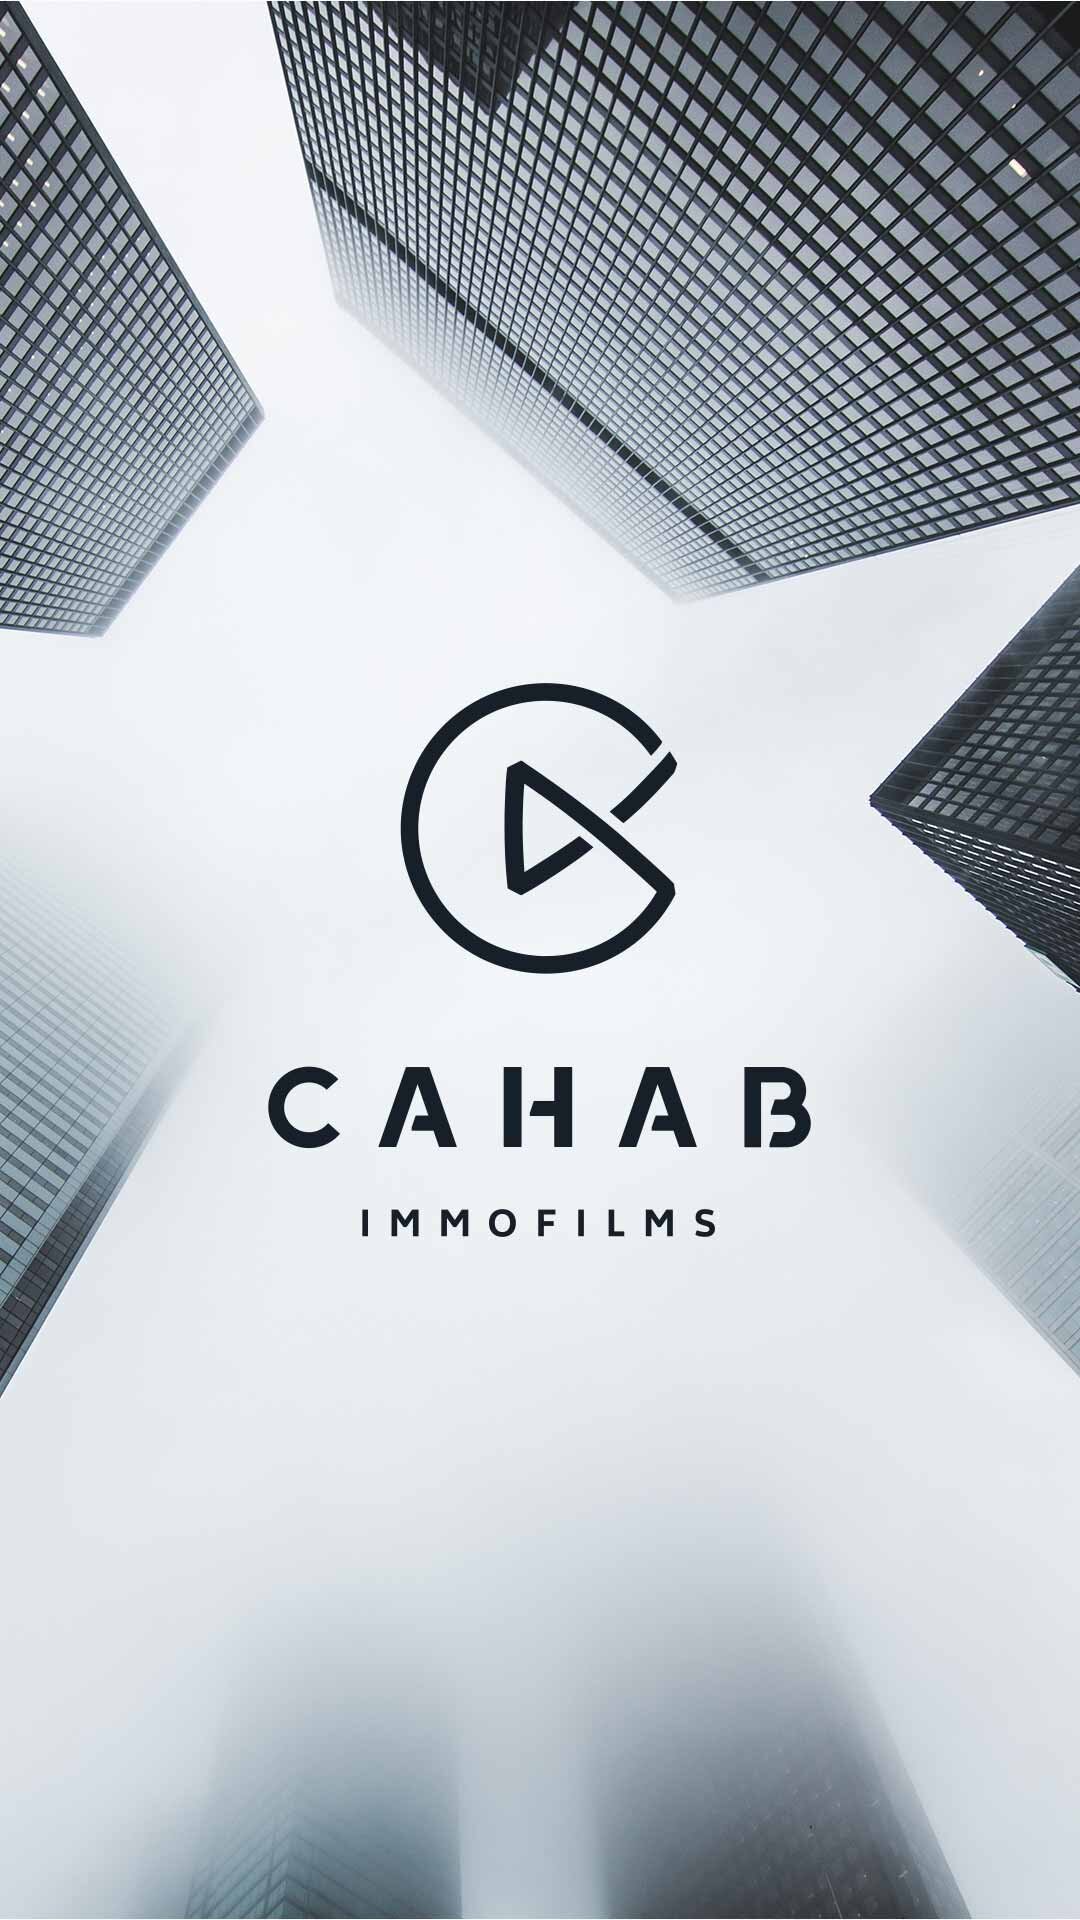 200116_Highlight_Logo_Cahab.jpg